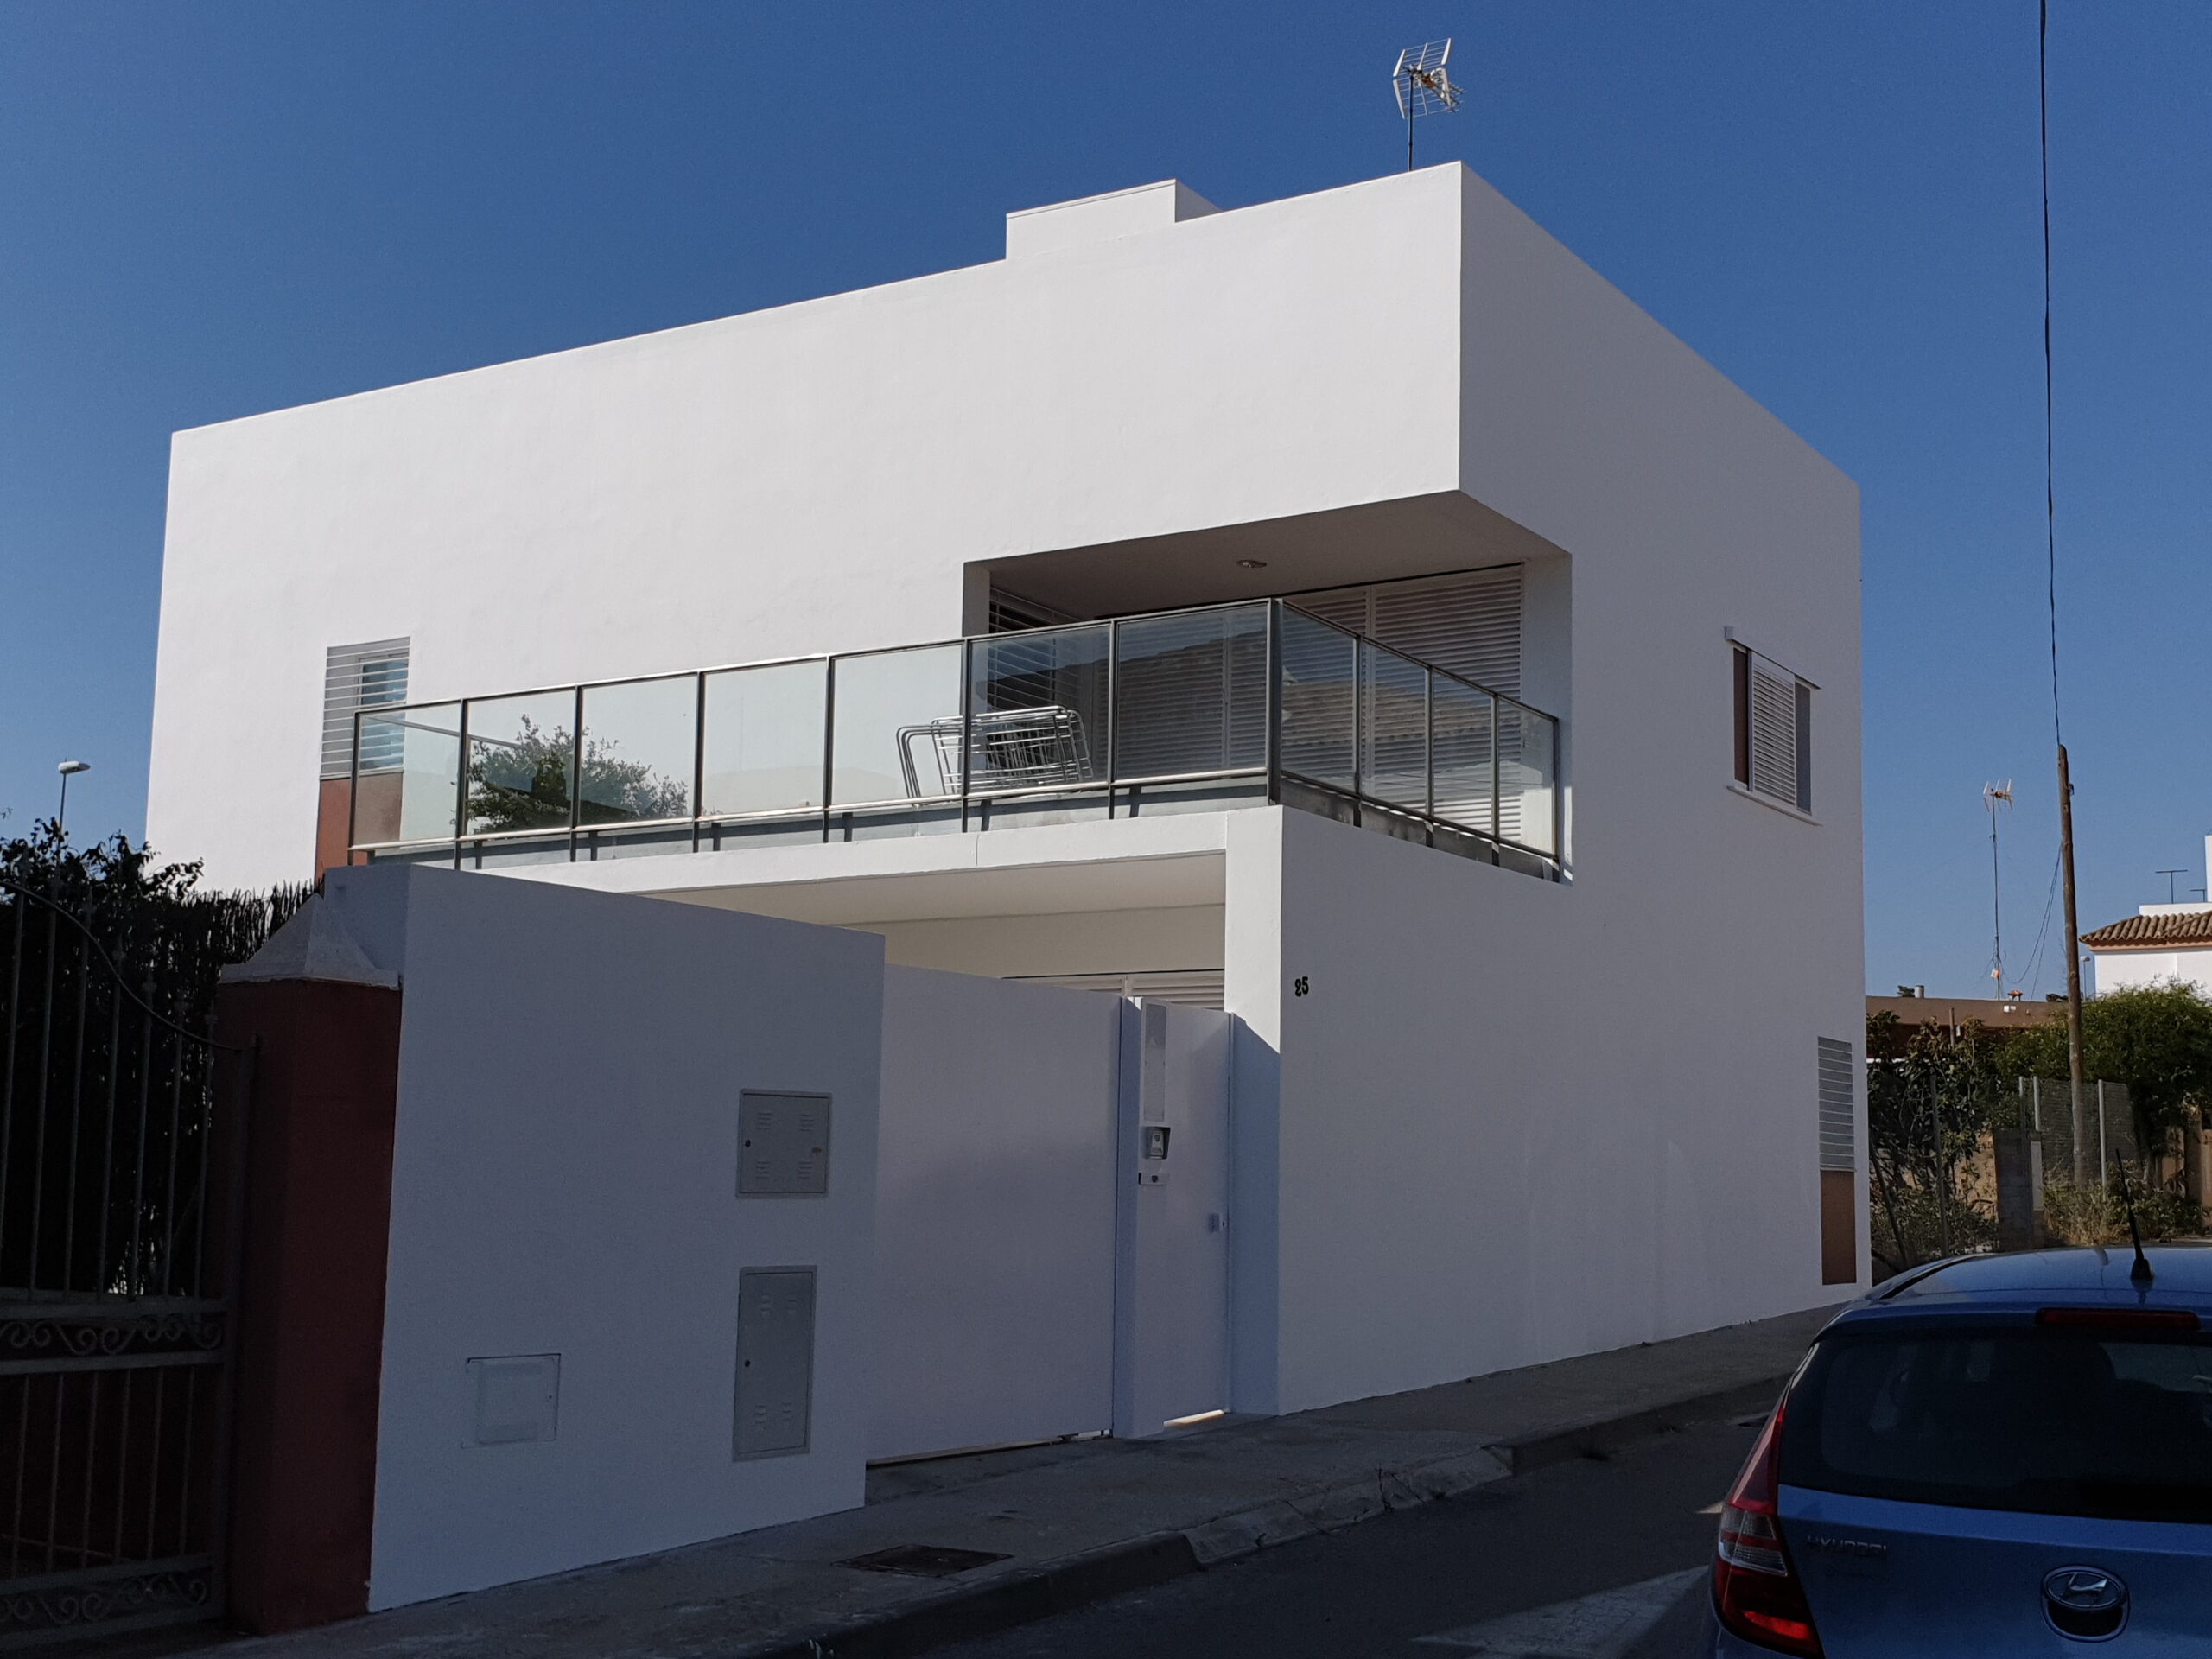 Servicios profesionales de pintura y lacado de muebles en Cádiz - Decoralia Pintores